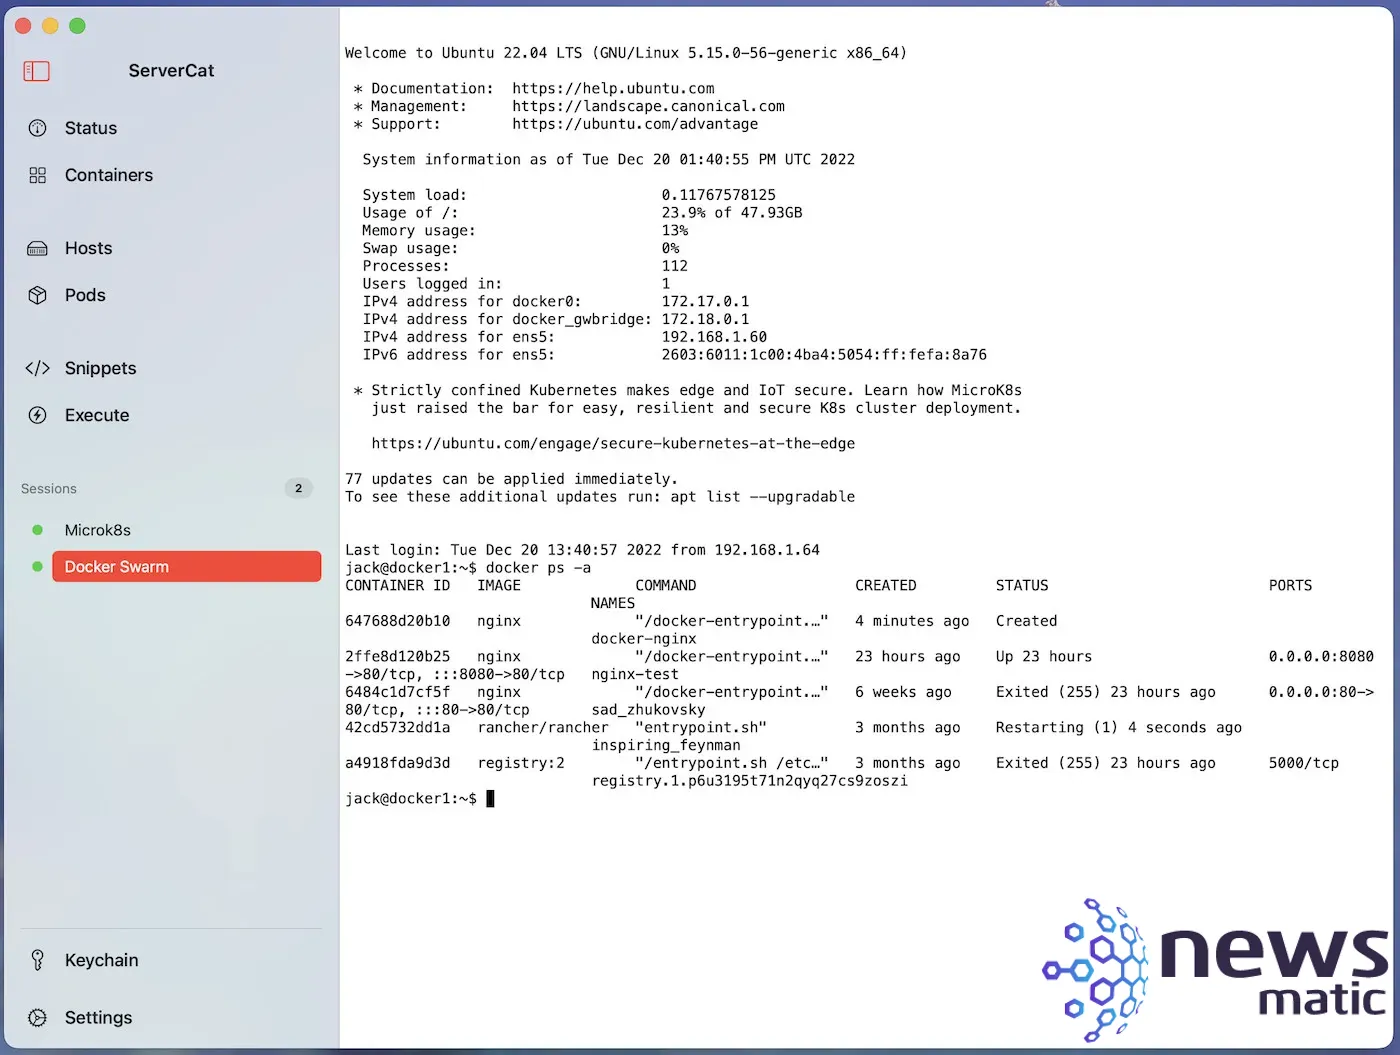 Cómo realizar despliegues de contenedores Docker en múltiples servidores con ServerCat - Nube | Imagen 6 Newsmatic